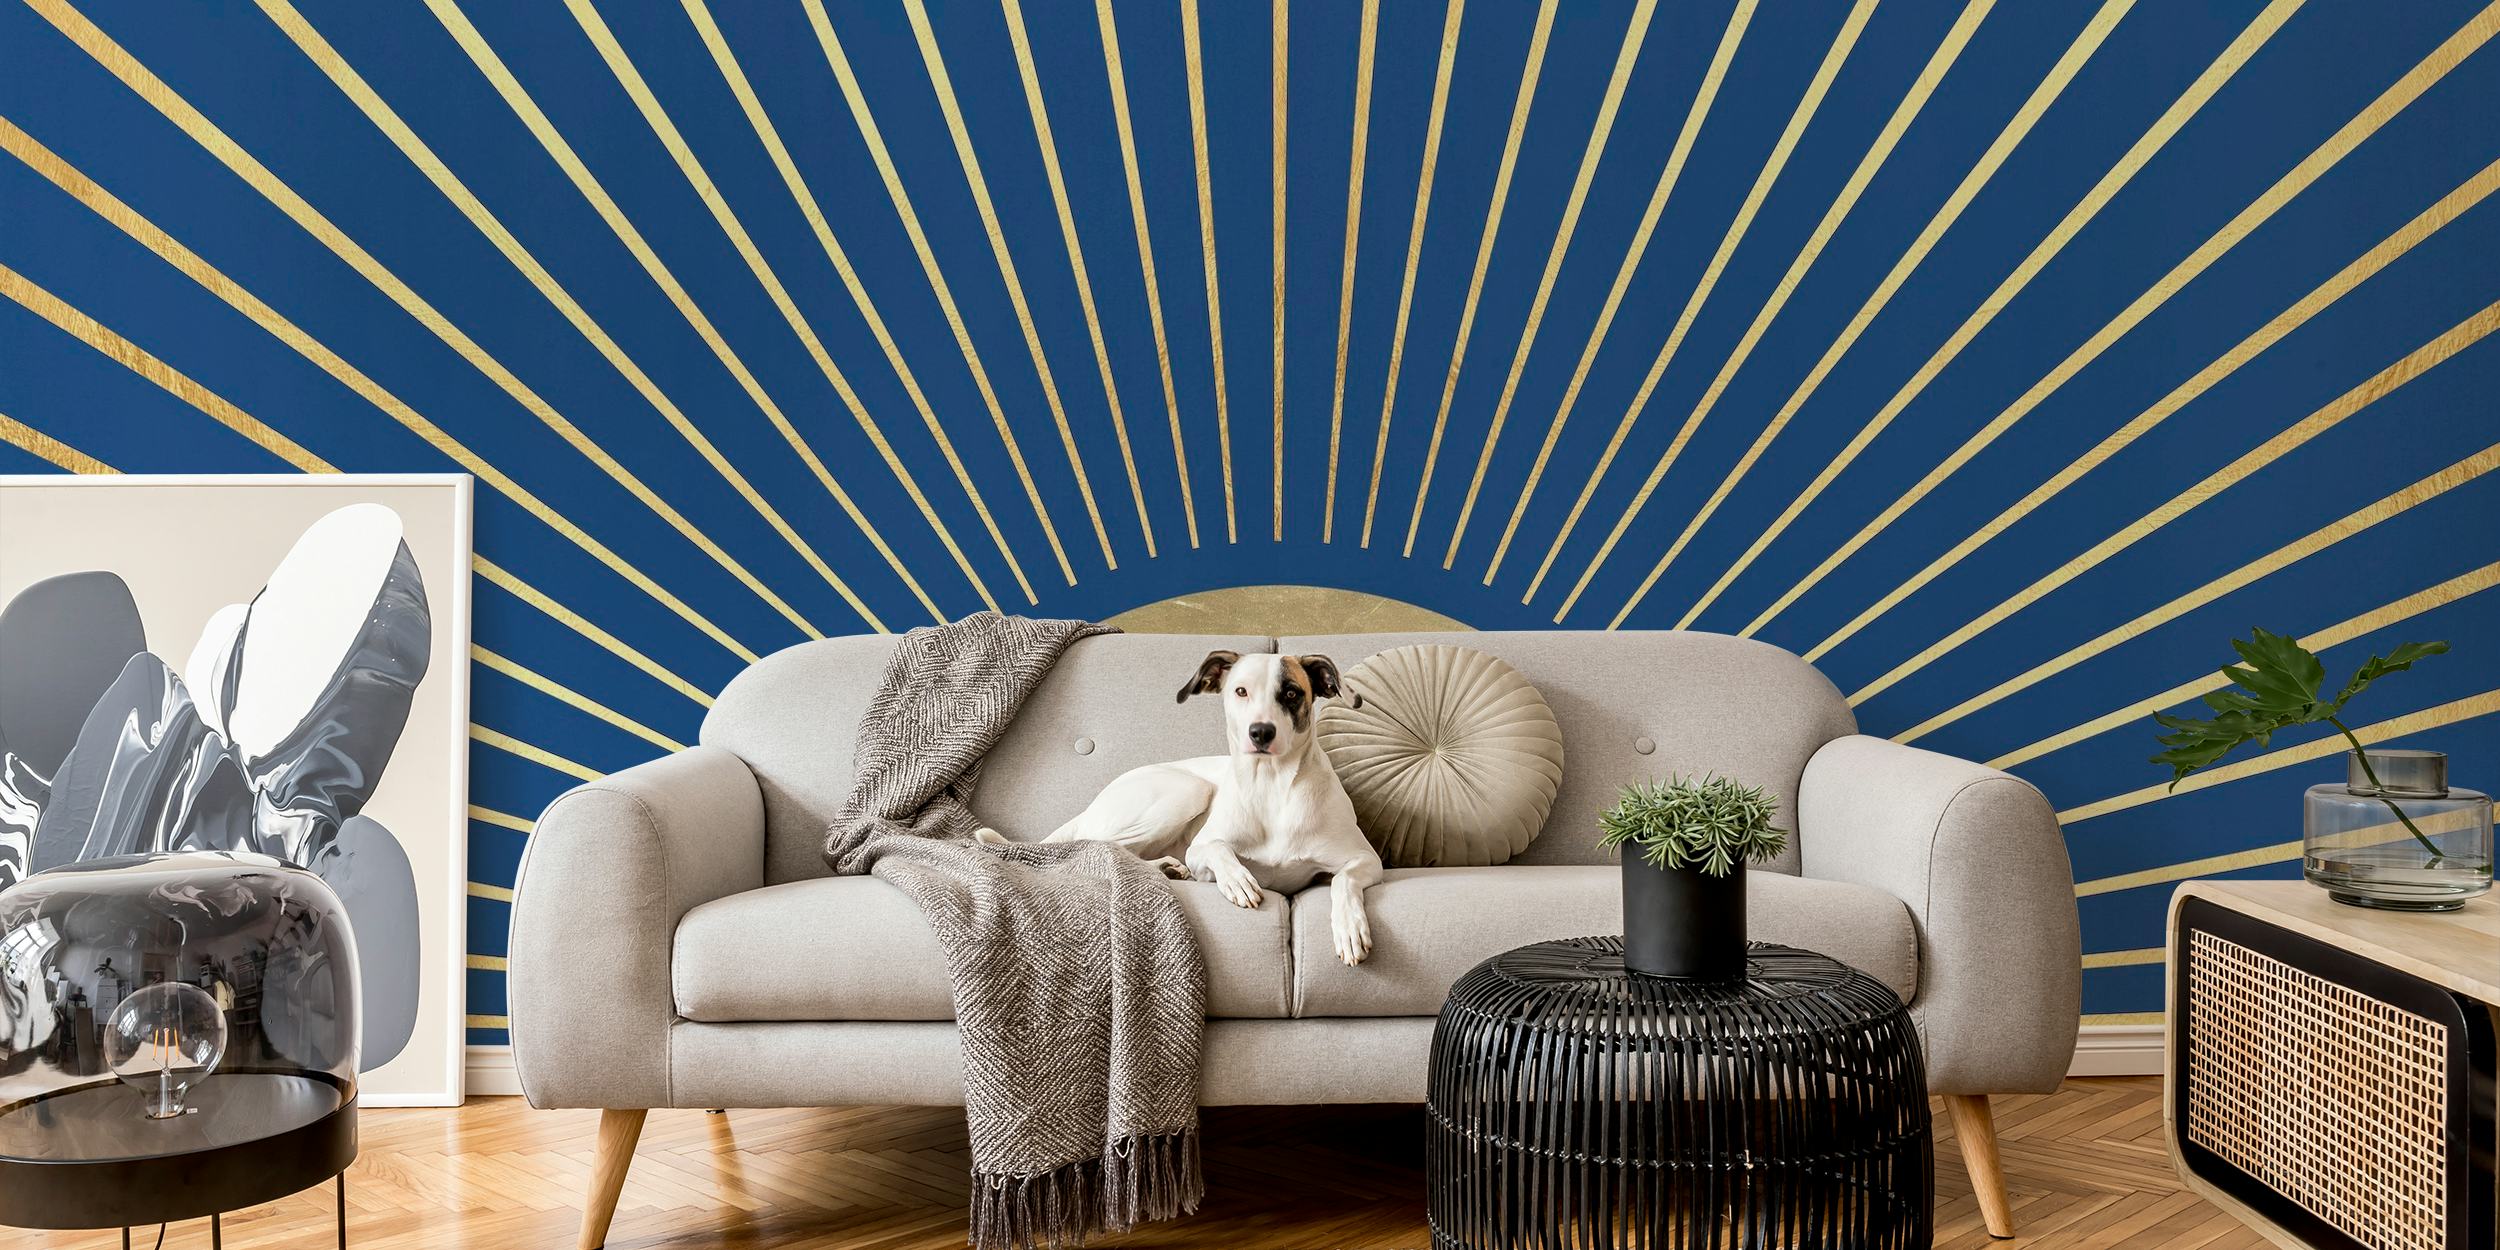 Representación artística de un mural de rayos de sol con líneas radiales sobre un fondo azul intenso.